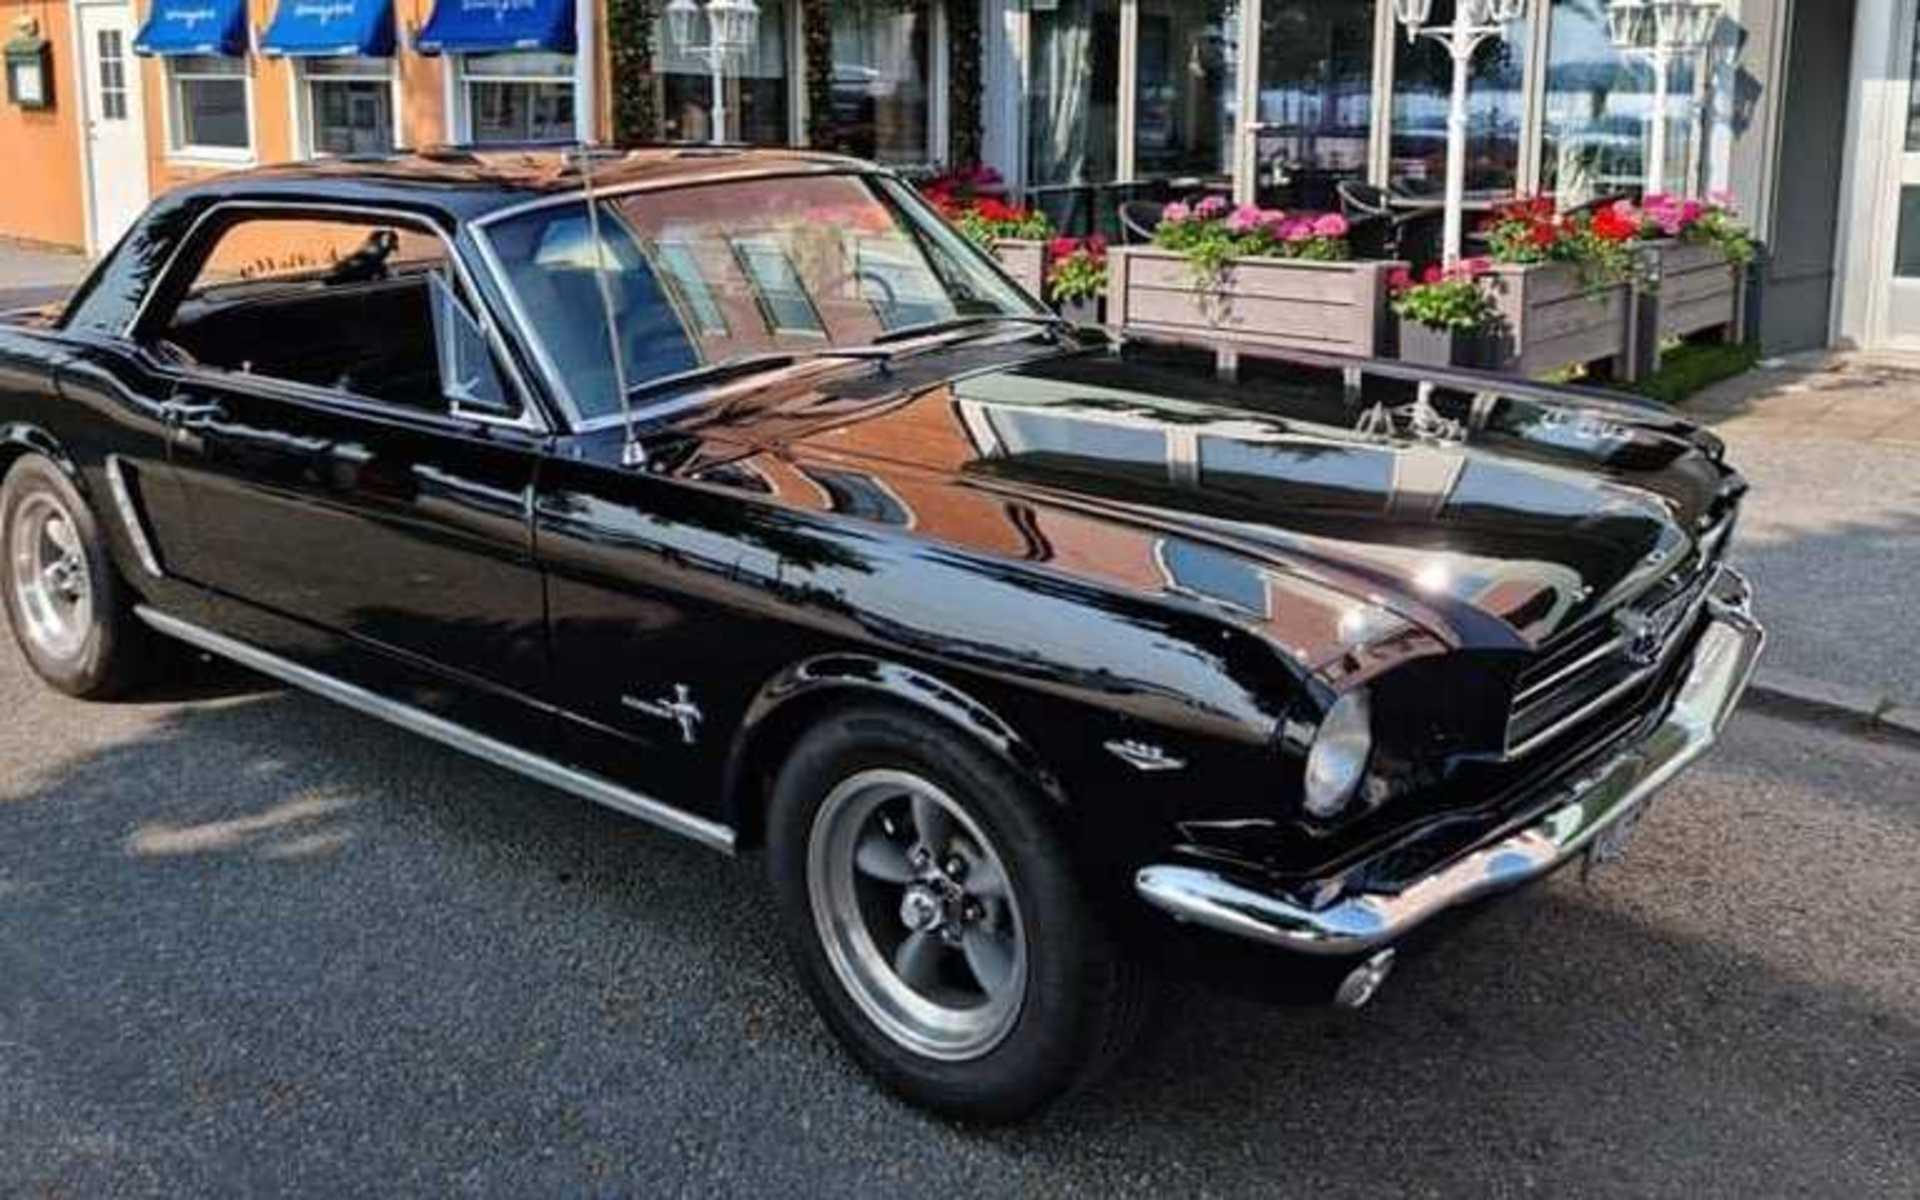 ”Våran älskade Mustang 65:a”